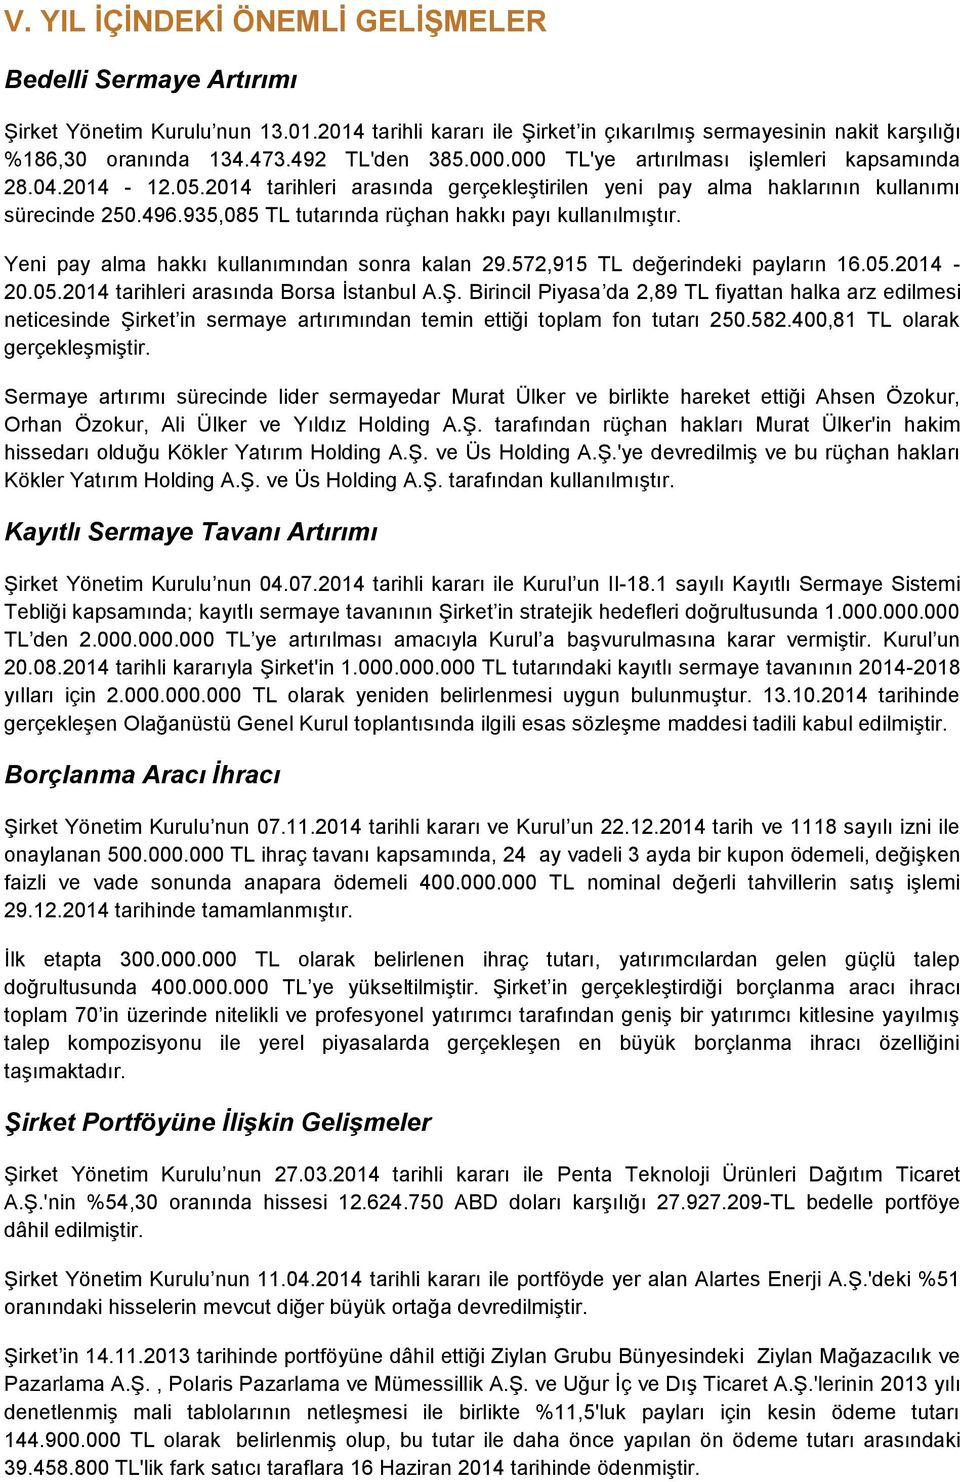 935,085 TL tutarında rüçhan hakkı payı kullanılmıştır. Yeni pay alma hakkı kullanımından sonra kalan 29.572,915 TL değerindeki payların 16.05.2014-20.05.2014 tarihleri arasında Borsa İstanbul A.Ş.